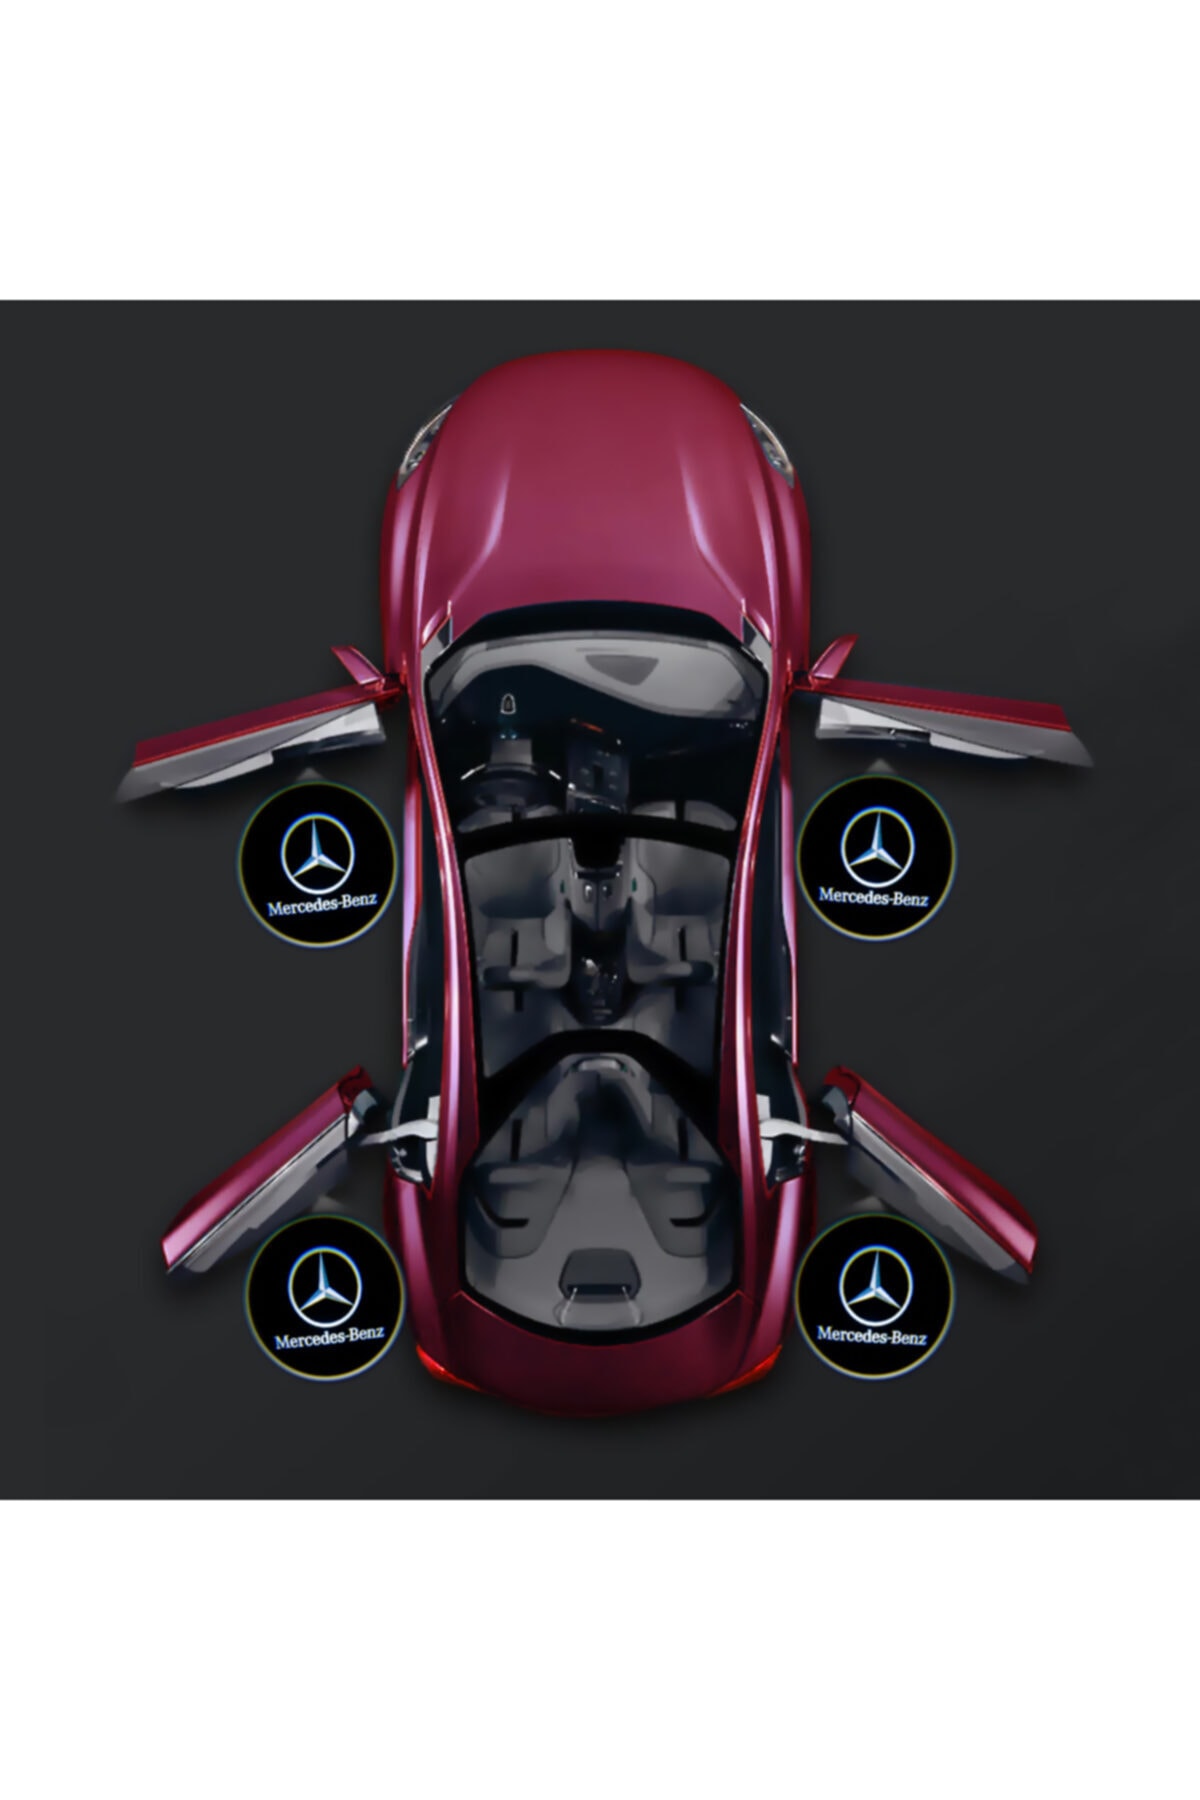 Mercedes Kapı Altı Pilli Led Logo Hd Lens Karanlık Ve Mesafe Sensörlü Led Işıklı Lamba